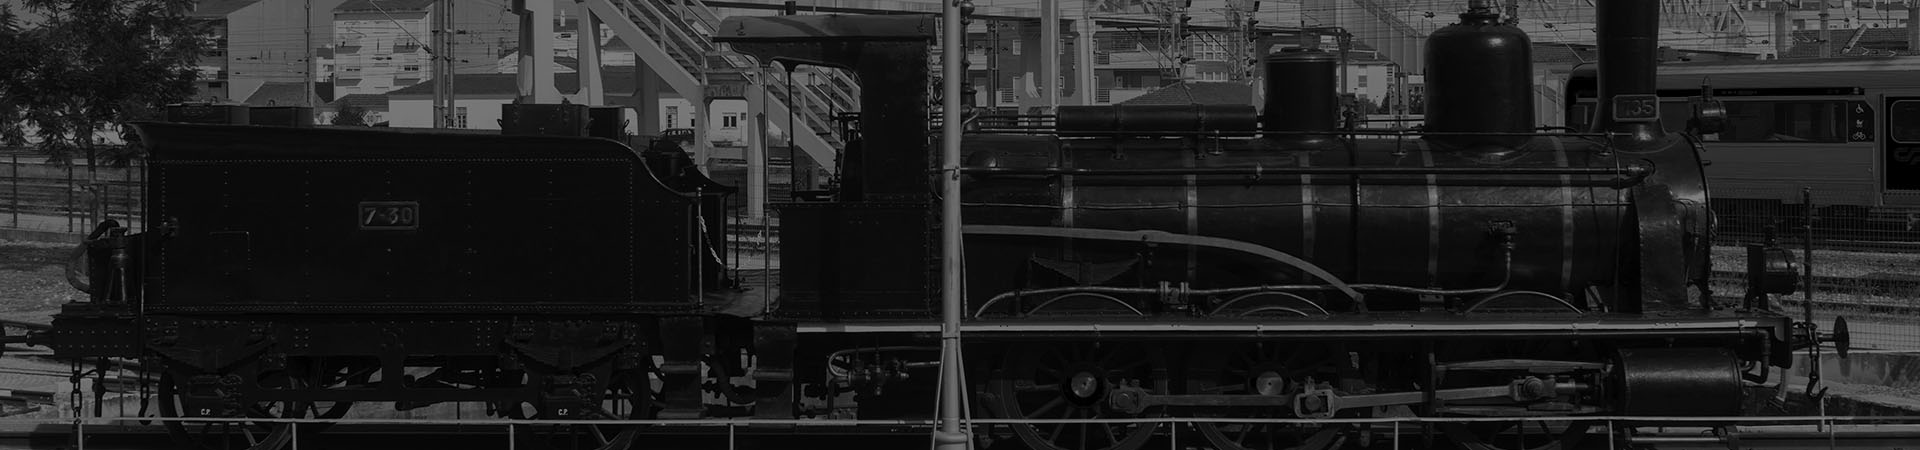 Photographie d'une des locomotives à vapeur avec le tender CP 855 sur le plateau tournant